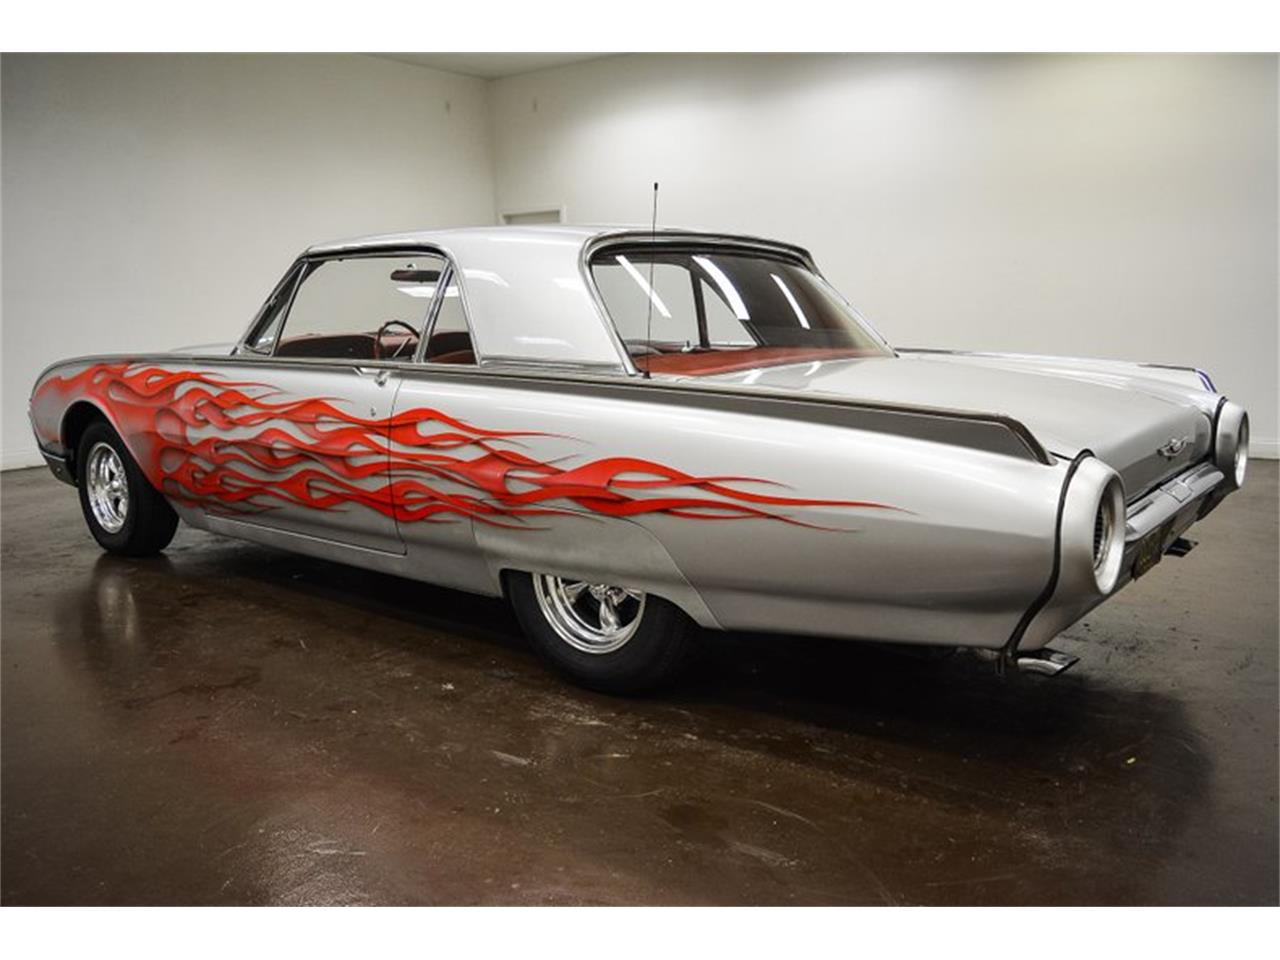 1961 thunderbird for sale texas